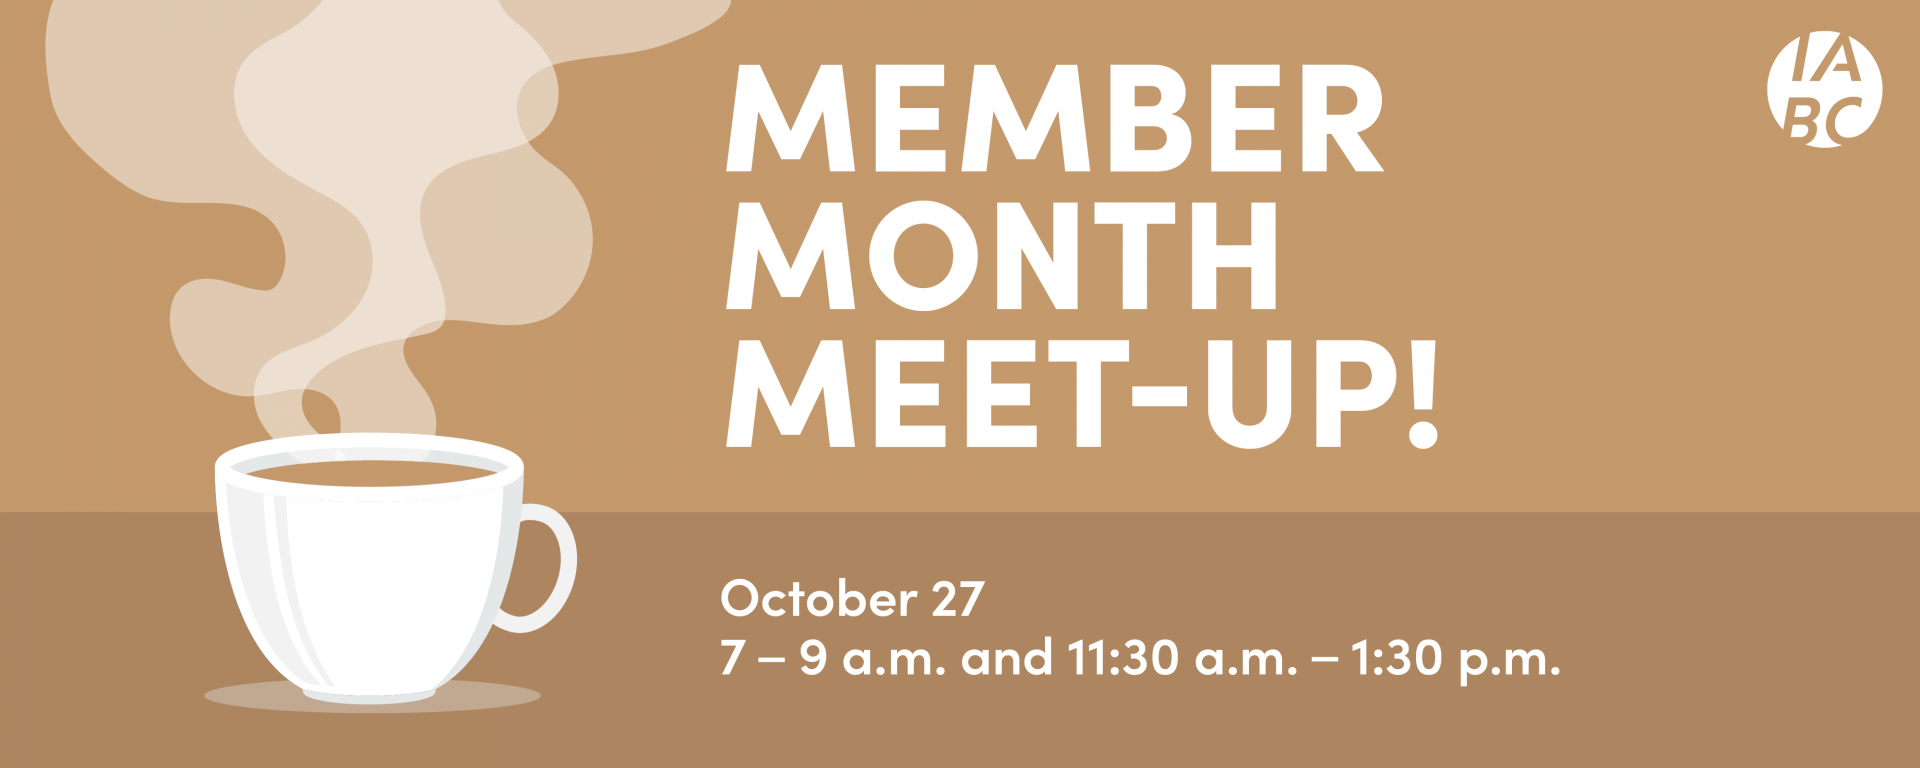 Member month meet up